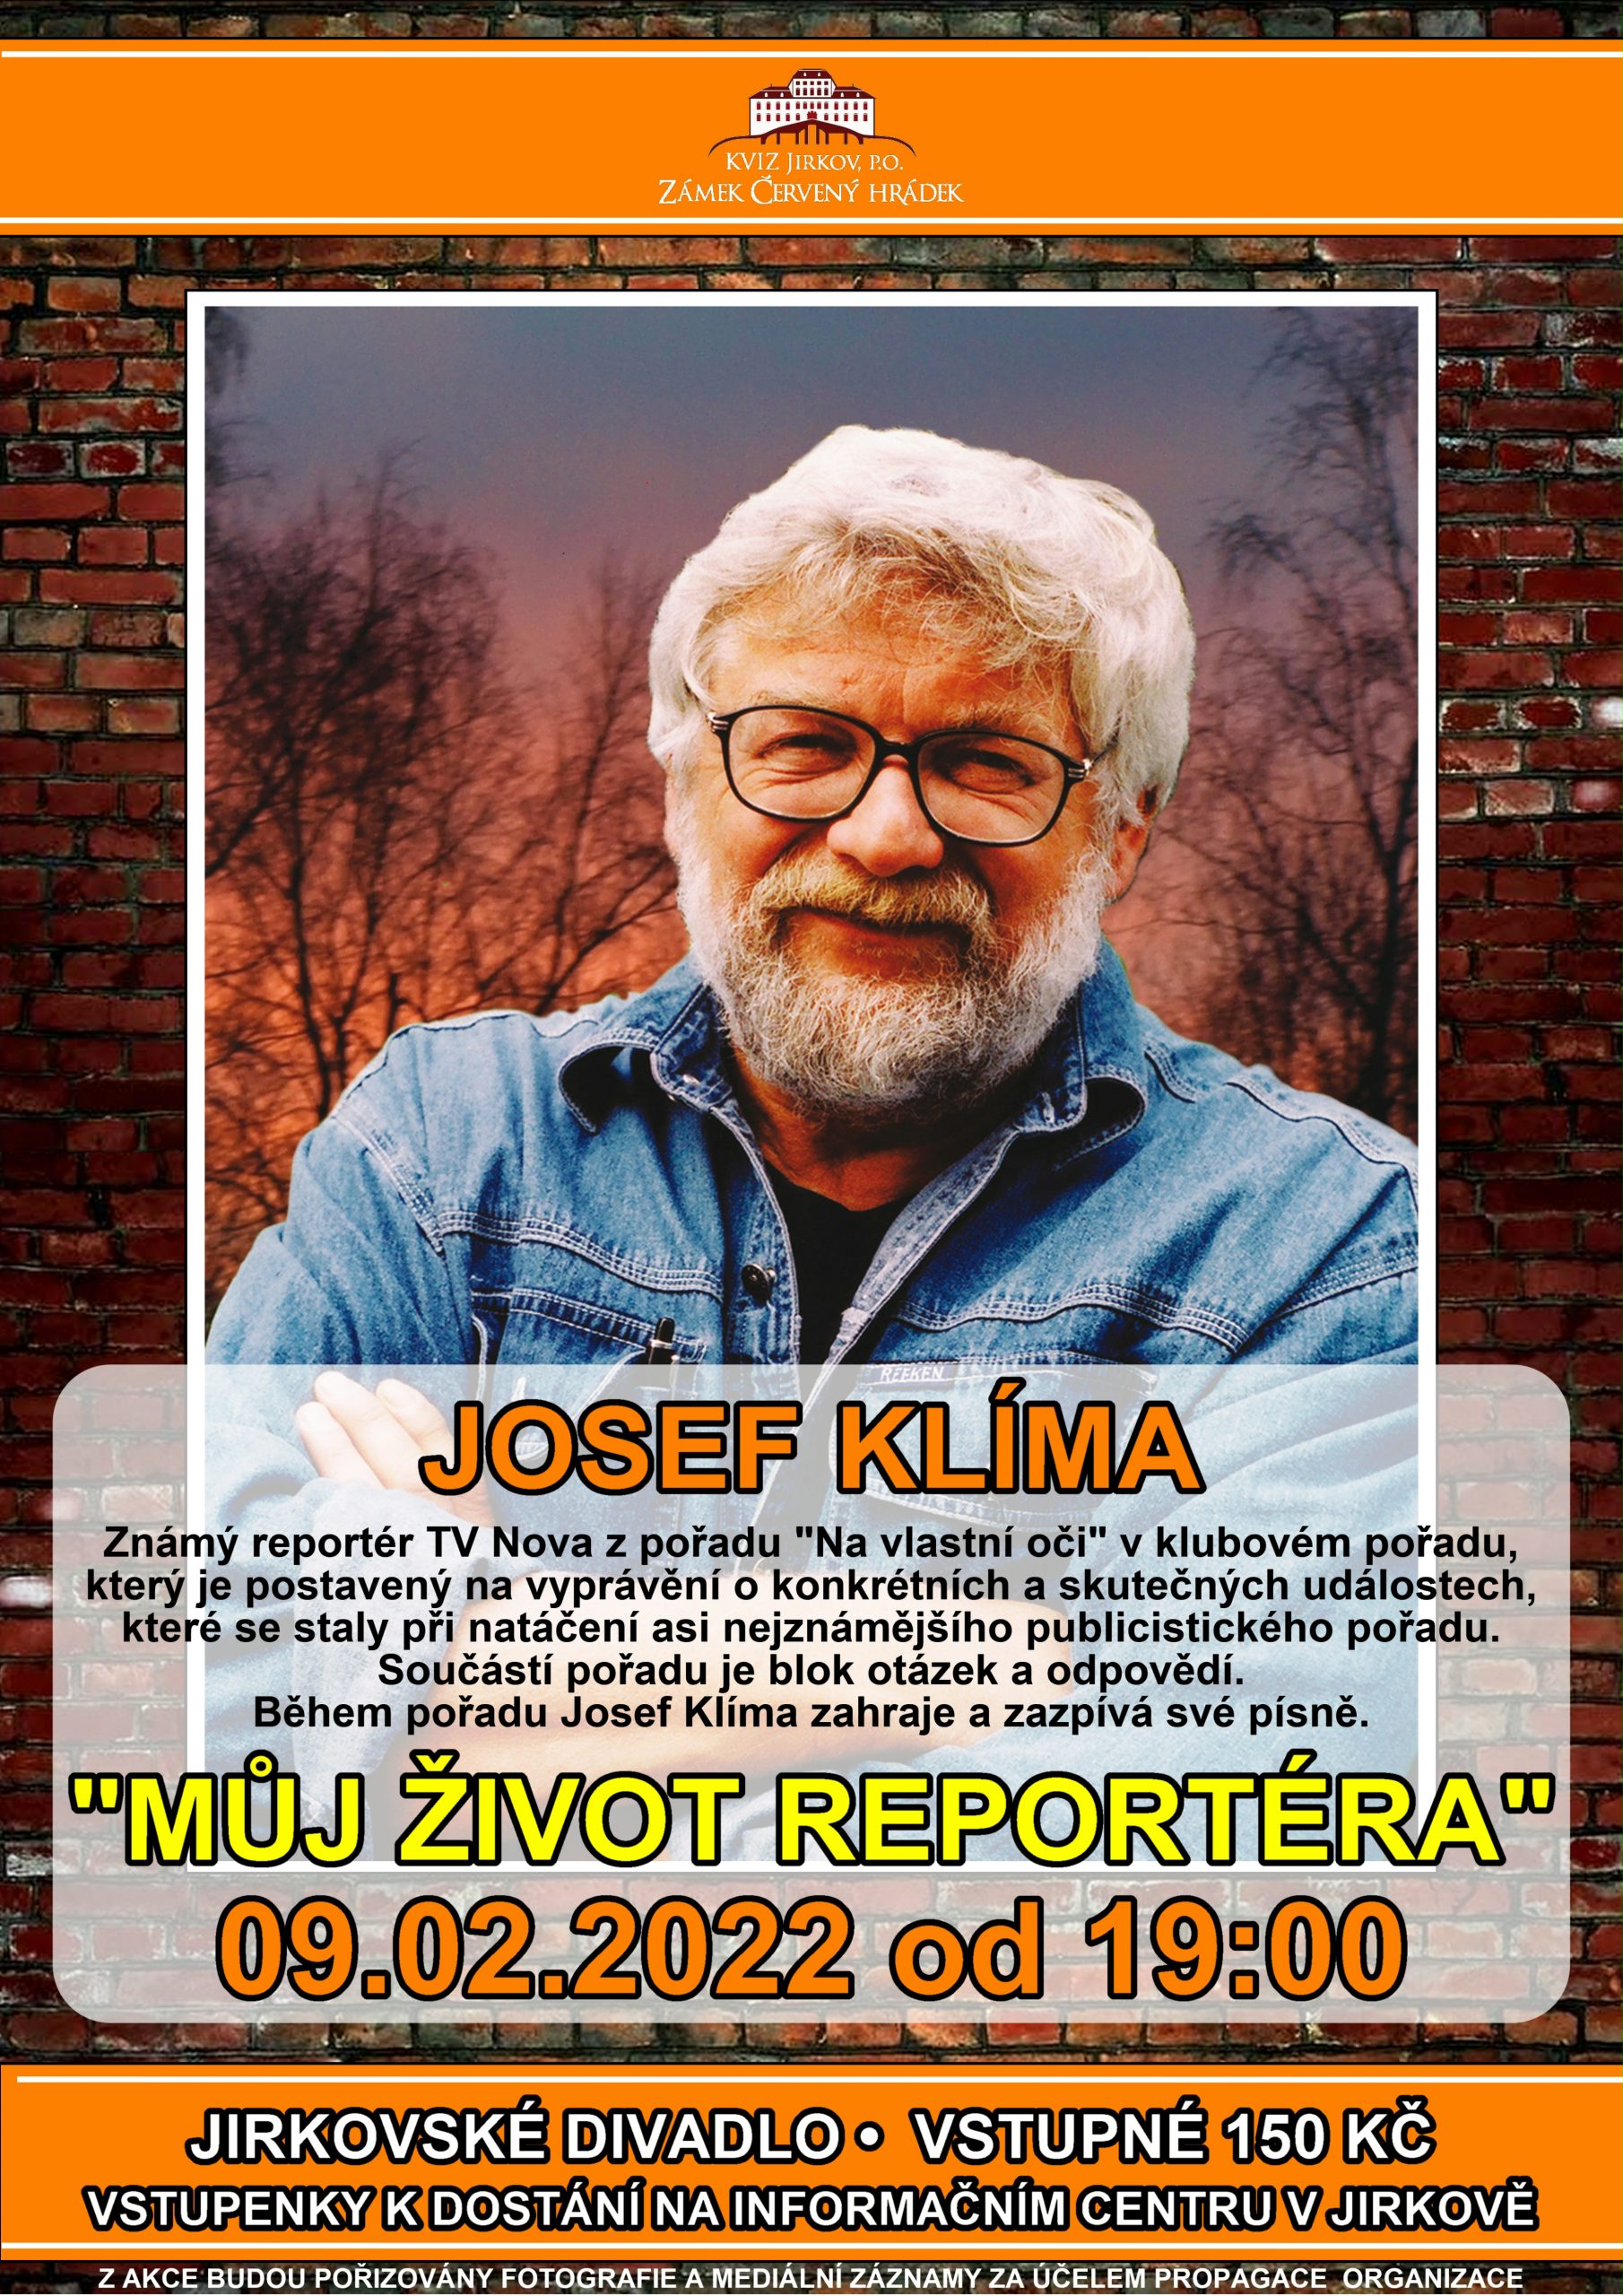 Jirkovské divadlo: Josef Klíma „MŮJ ŽIVOT REPORTÉRA“ – 09.02.2022